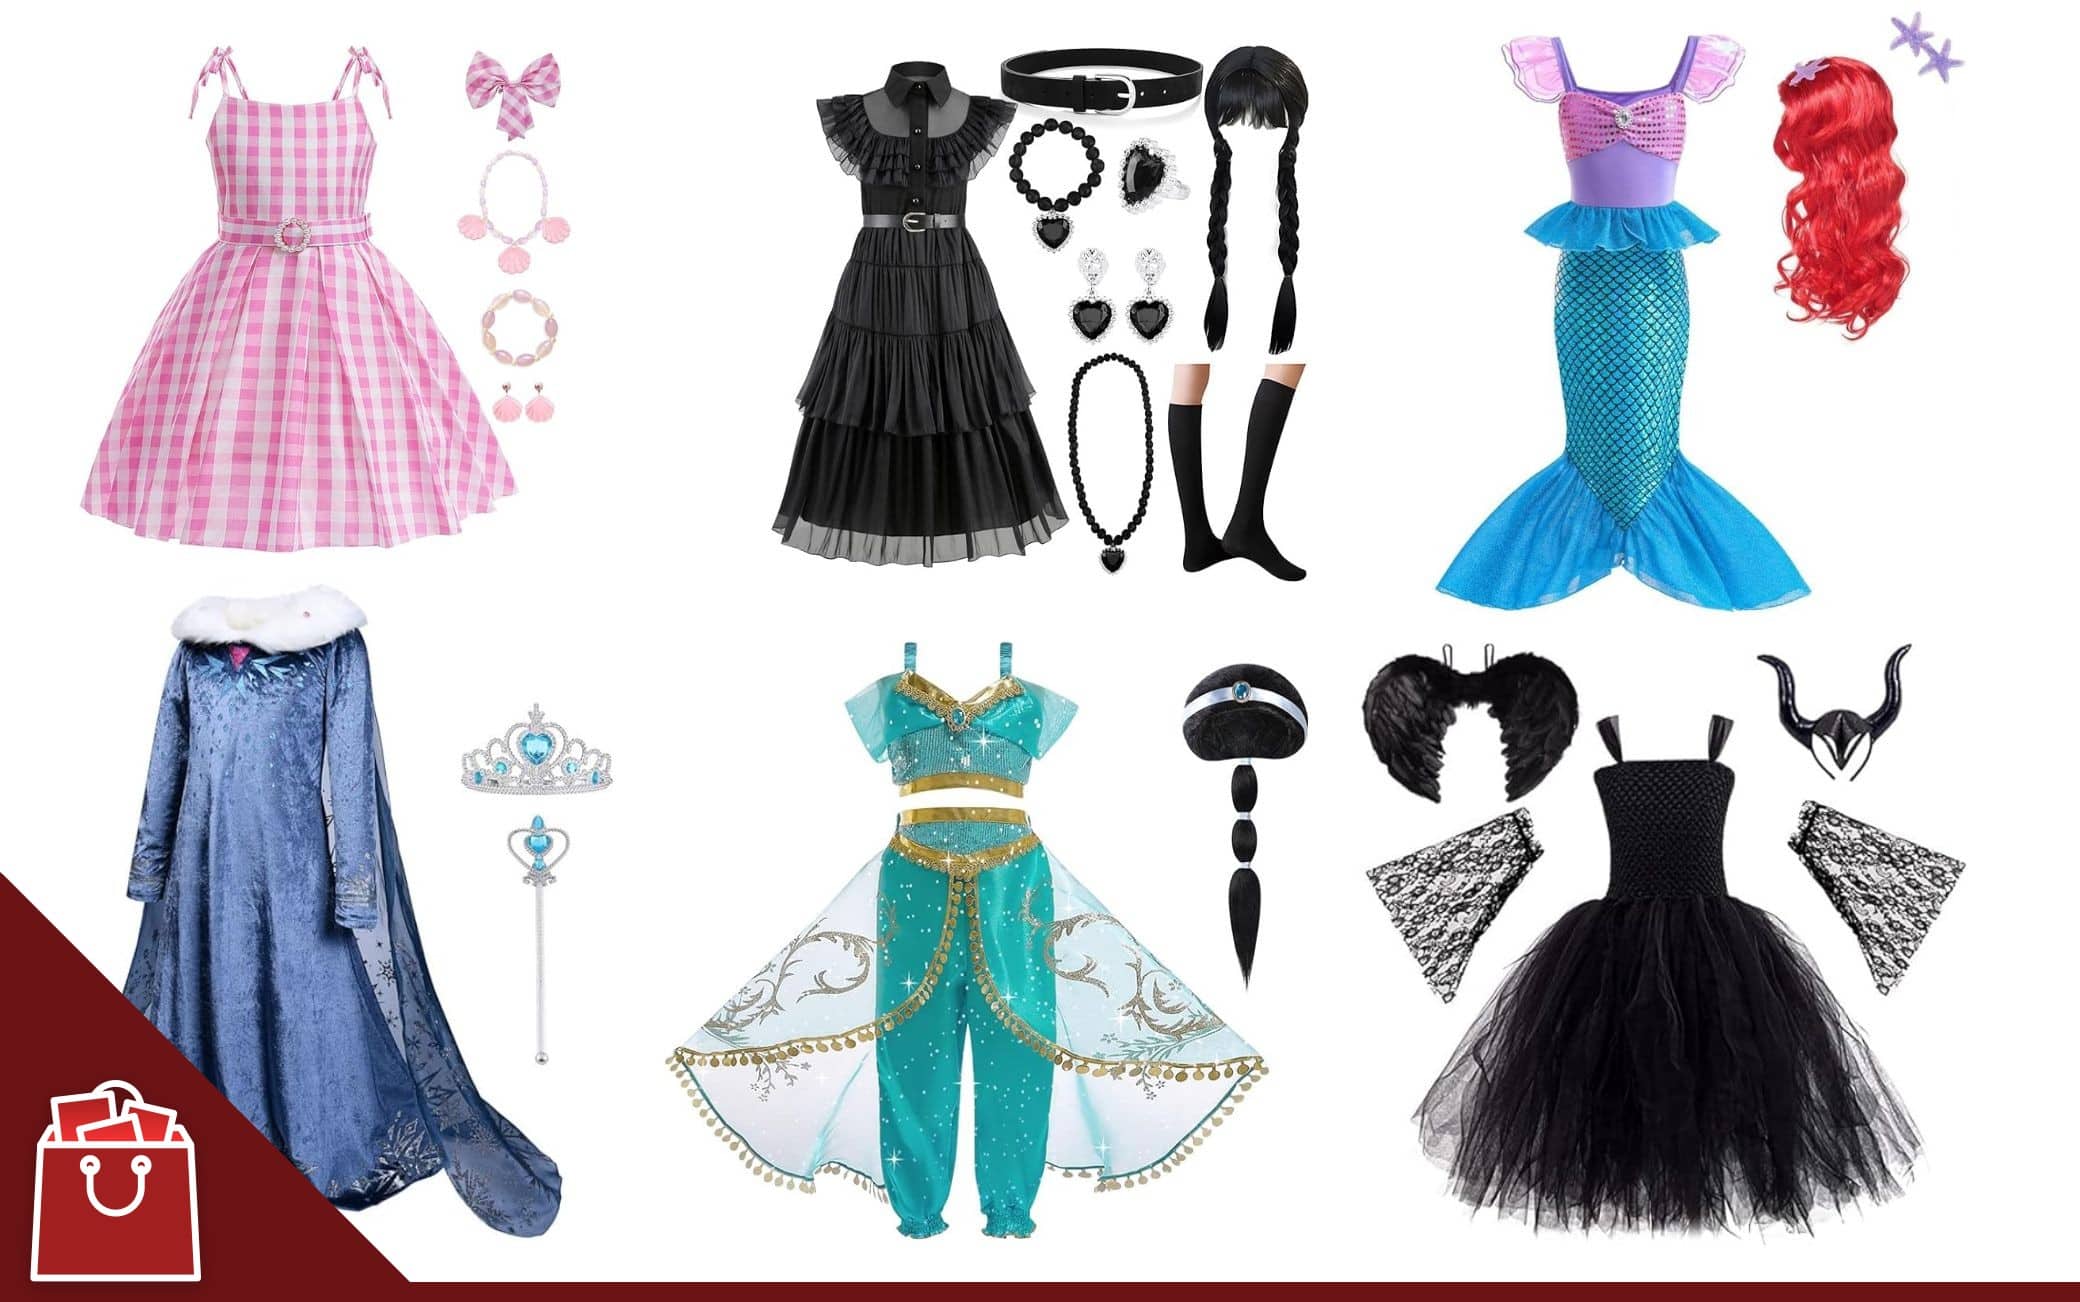 Vestiti di Carnevale, 12 idee per i costumi delle bambine da Barbie alle  principesse Disney